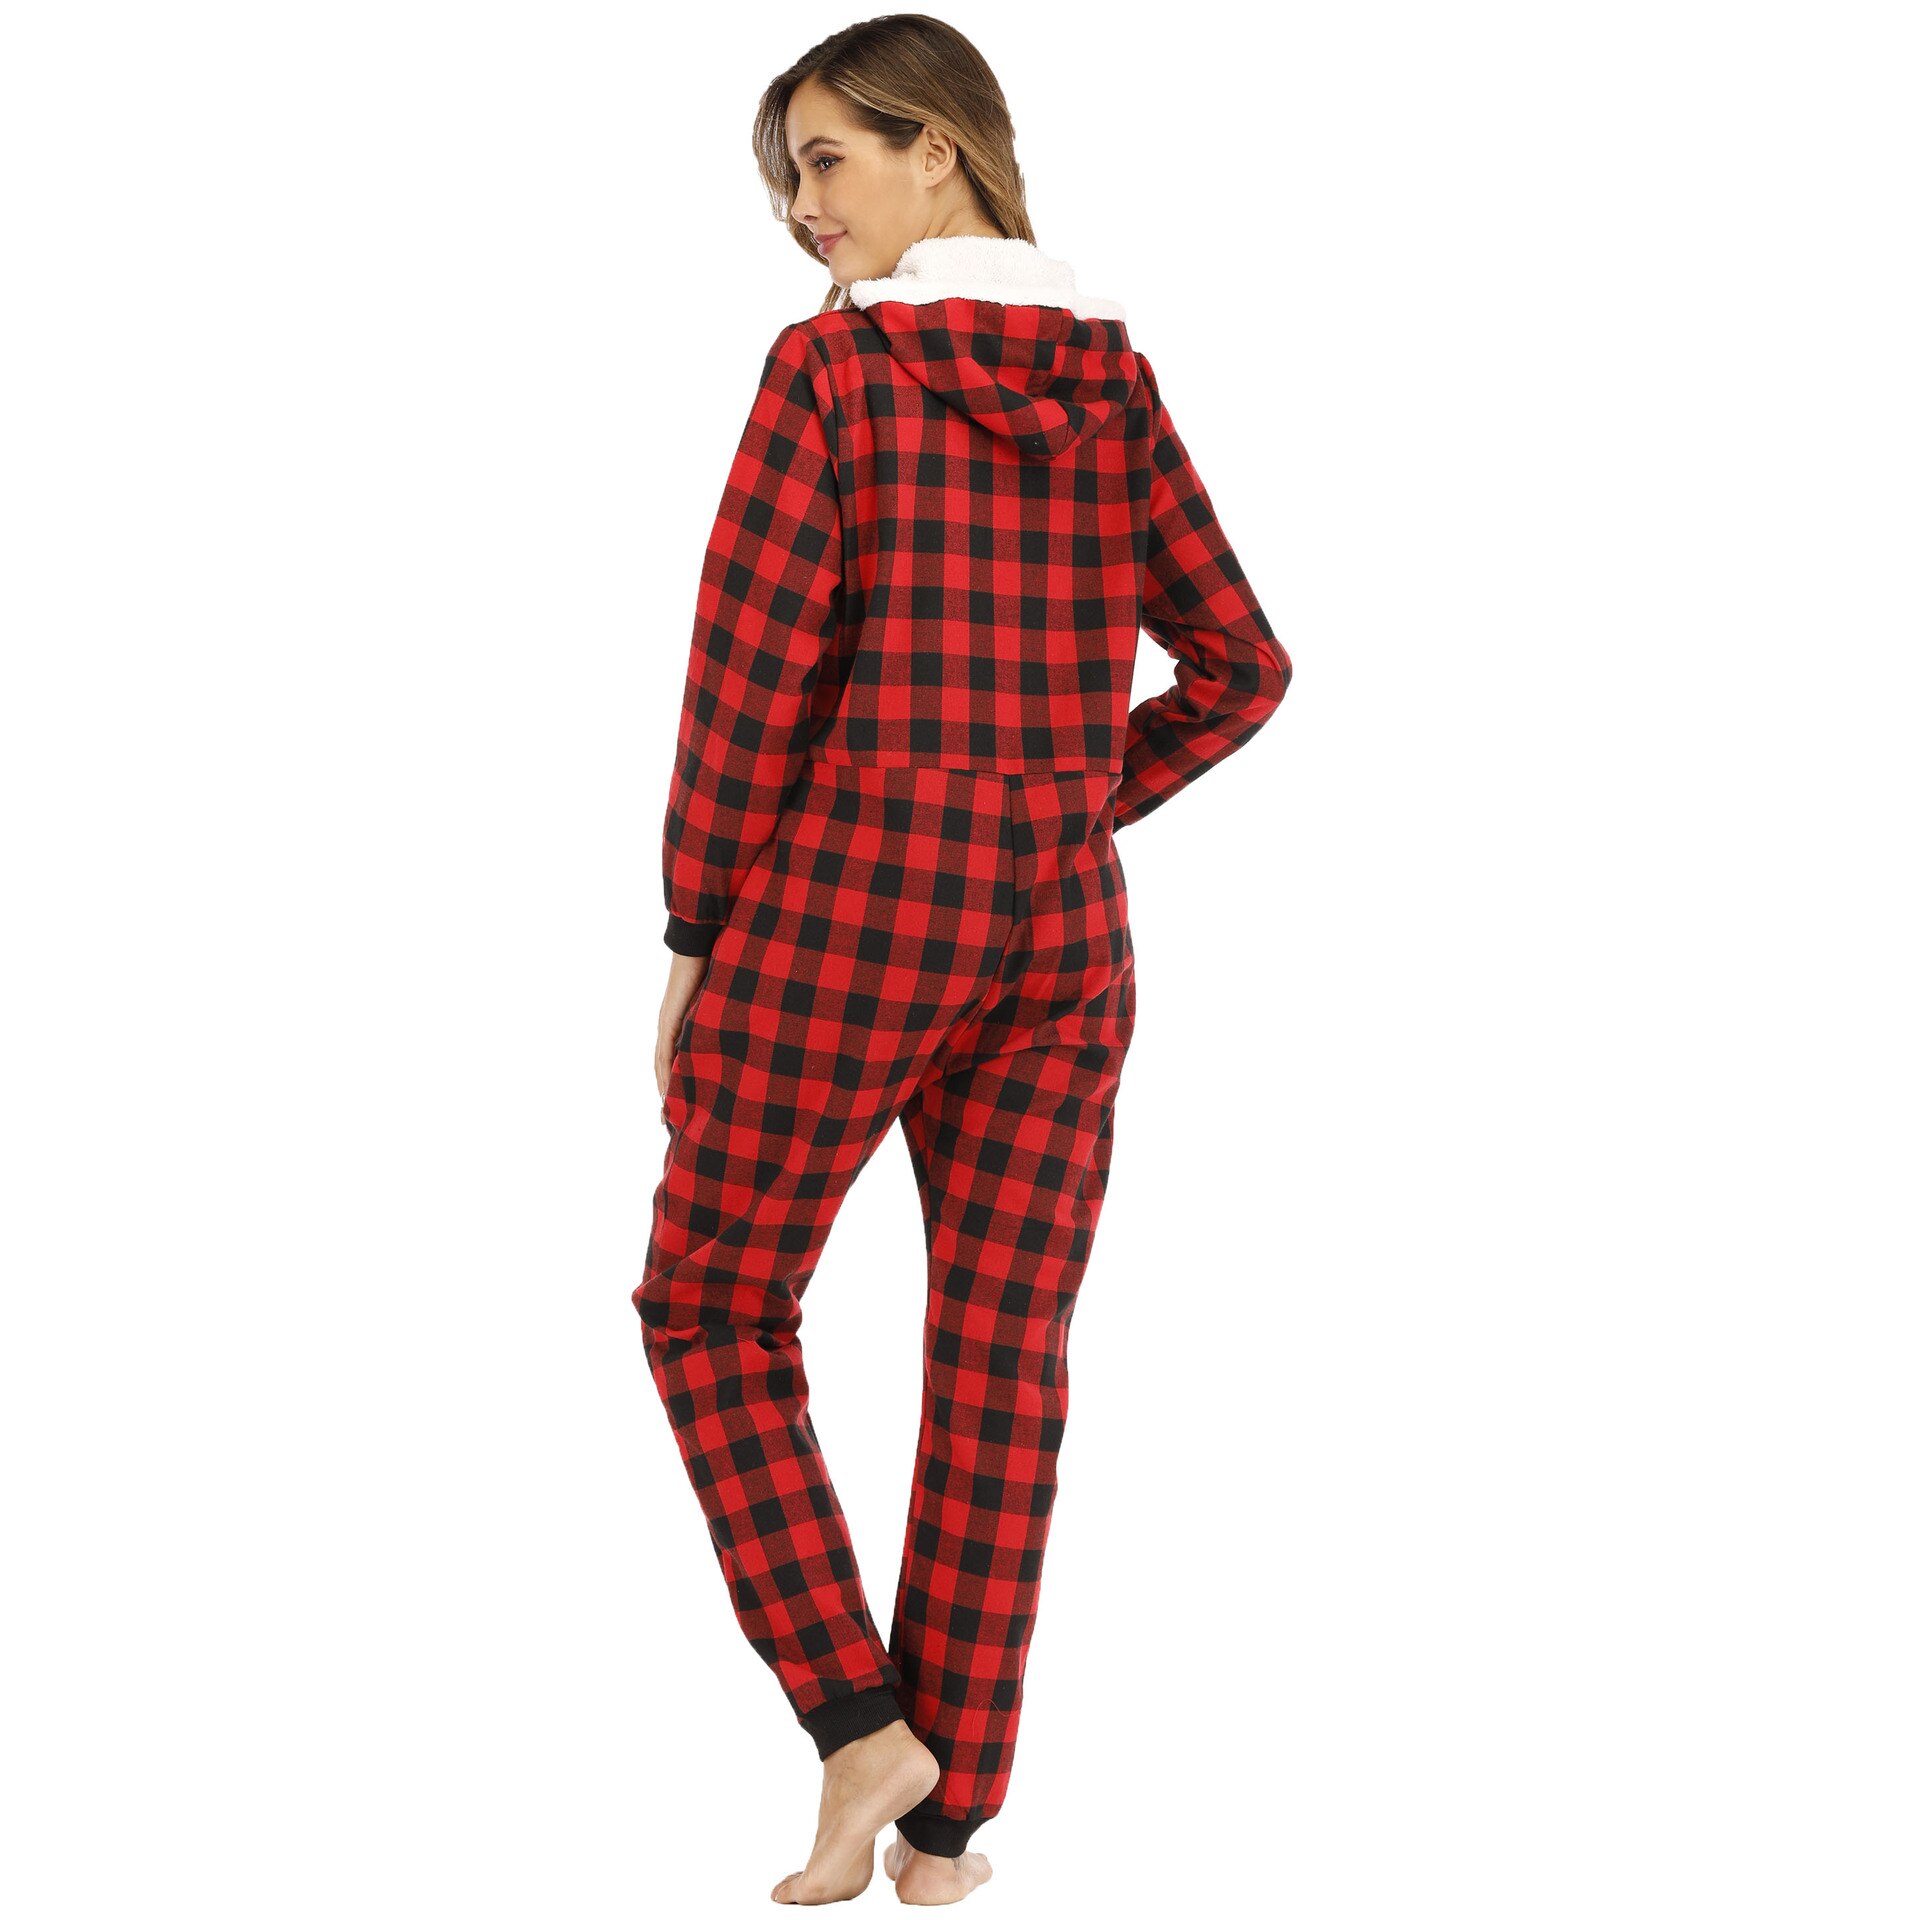 Plaid Print Jumpsuit Winter Adult Women Onesies Pajama Zipper Long Sleeve Casual Homewear Hood Romper Sleepwear Splicing Set